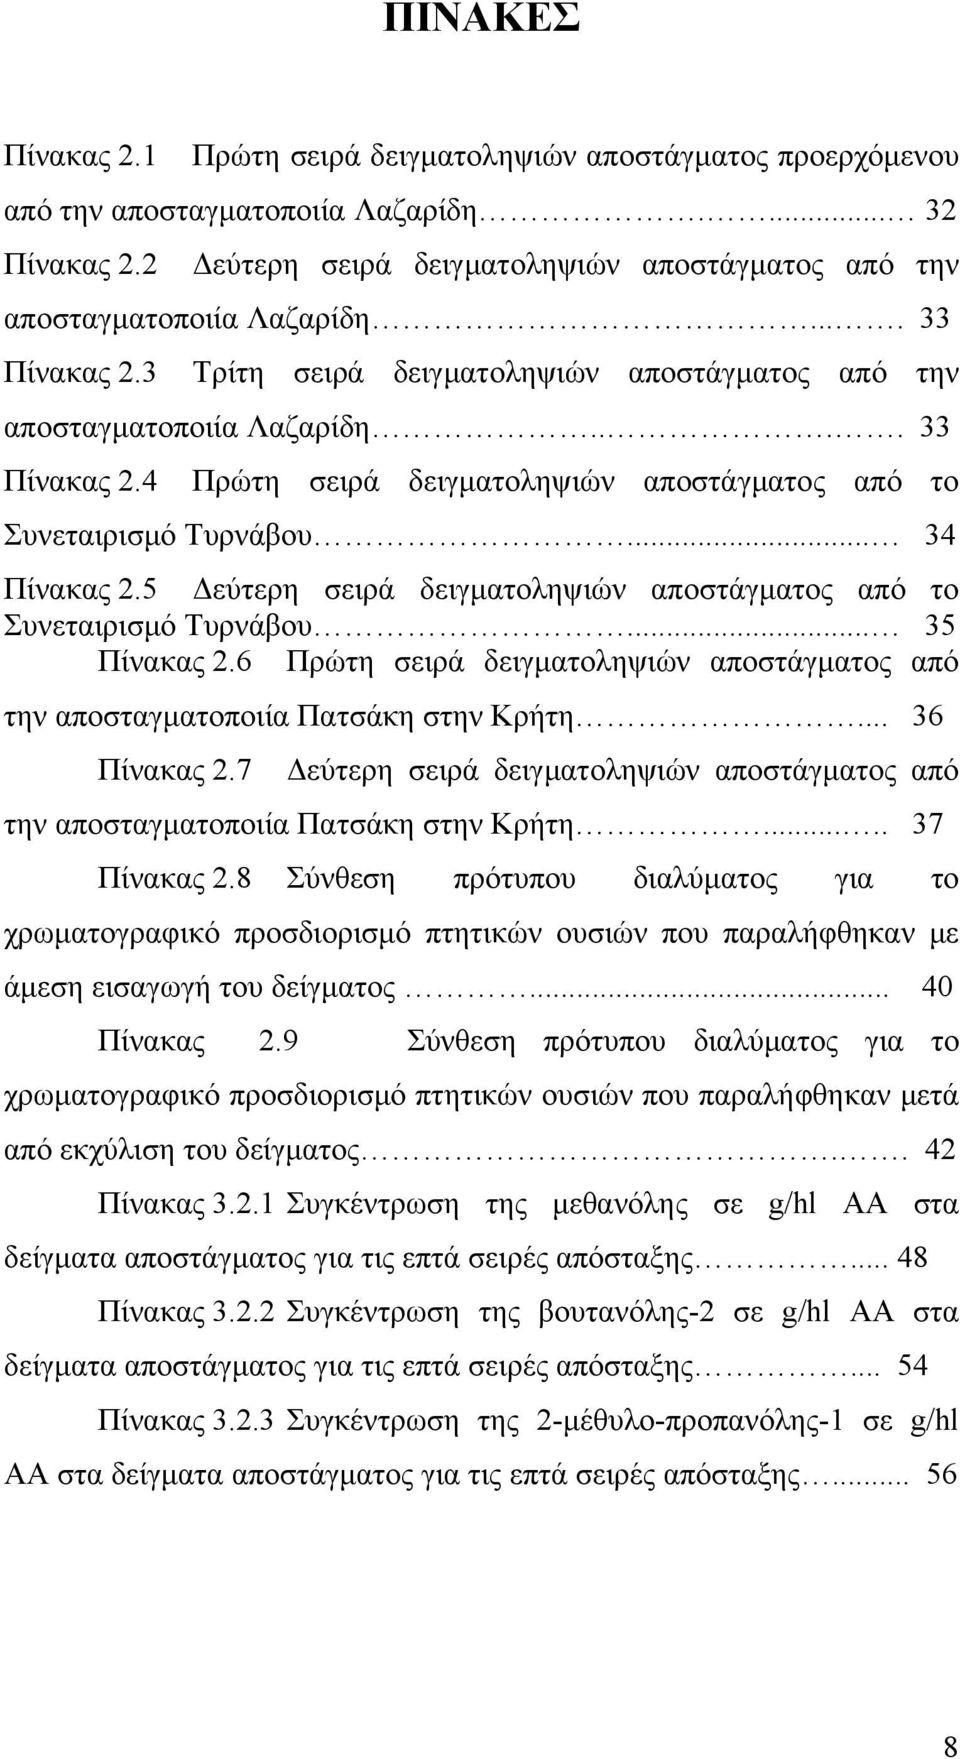 .. 34 Πίνακας 2.5 Δεύτερη σειρά δειγματοληψιών αποστάγματος από το Συνεταιρισμό Τυρνάβου... 35 Πίνακας 2.6 Πρώτη σειρά δειγματοληψιών αποστάγματος από την αποσταγματοποιία Πατσάκη στην Κρήτη.